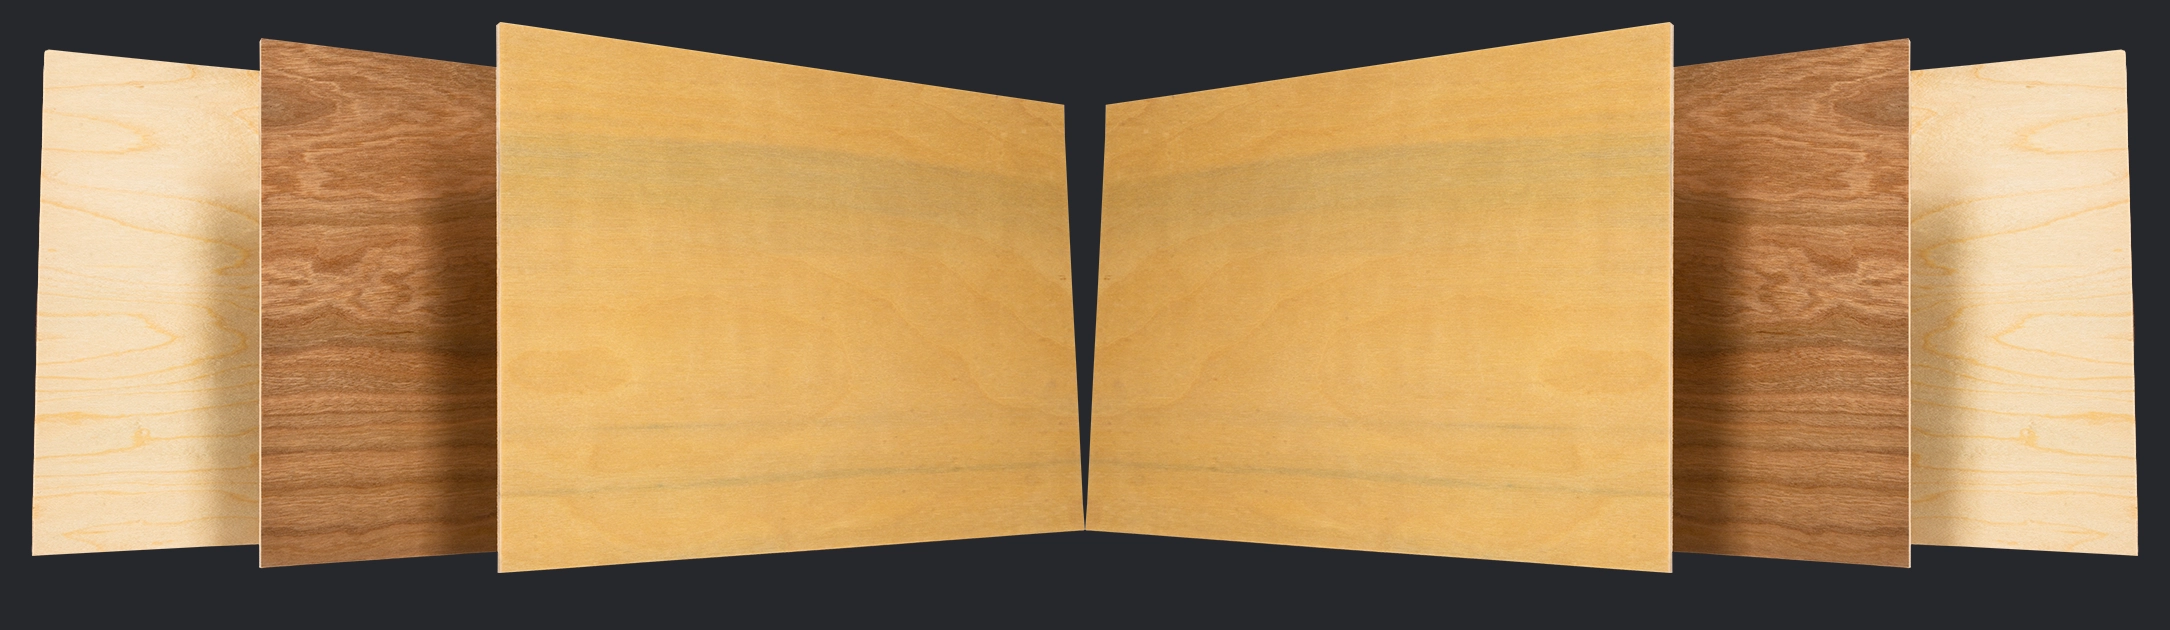 Wood Veneer Panels for Laser